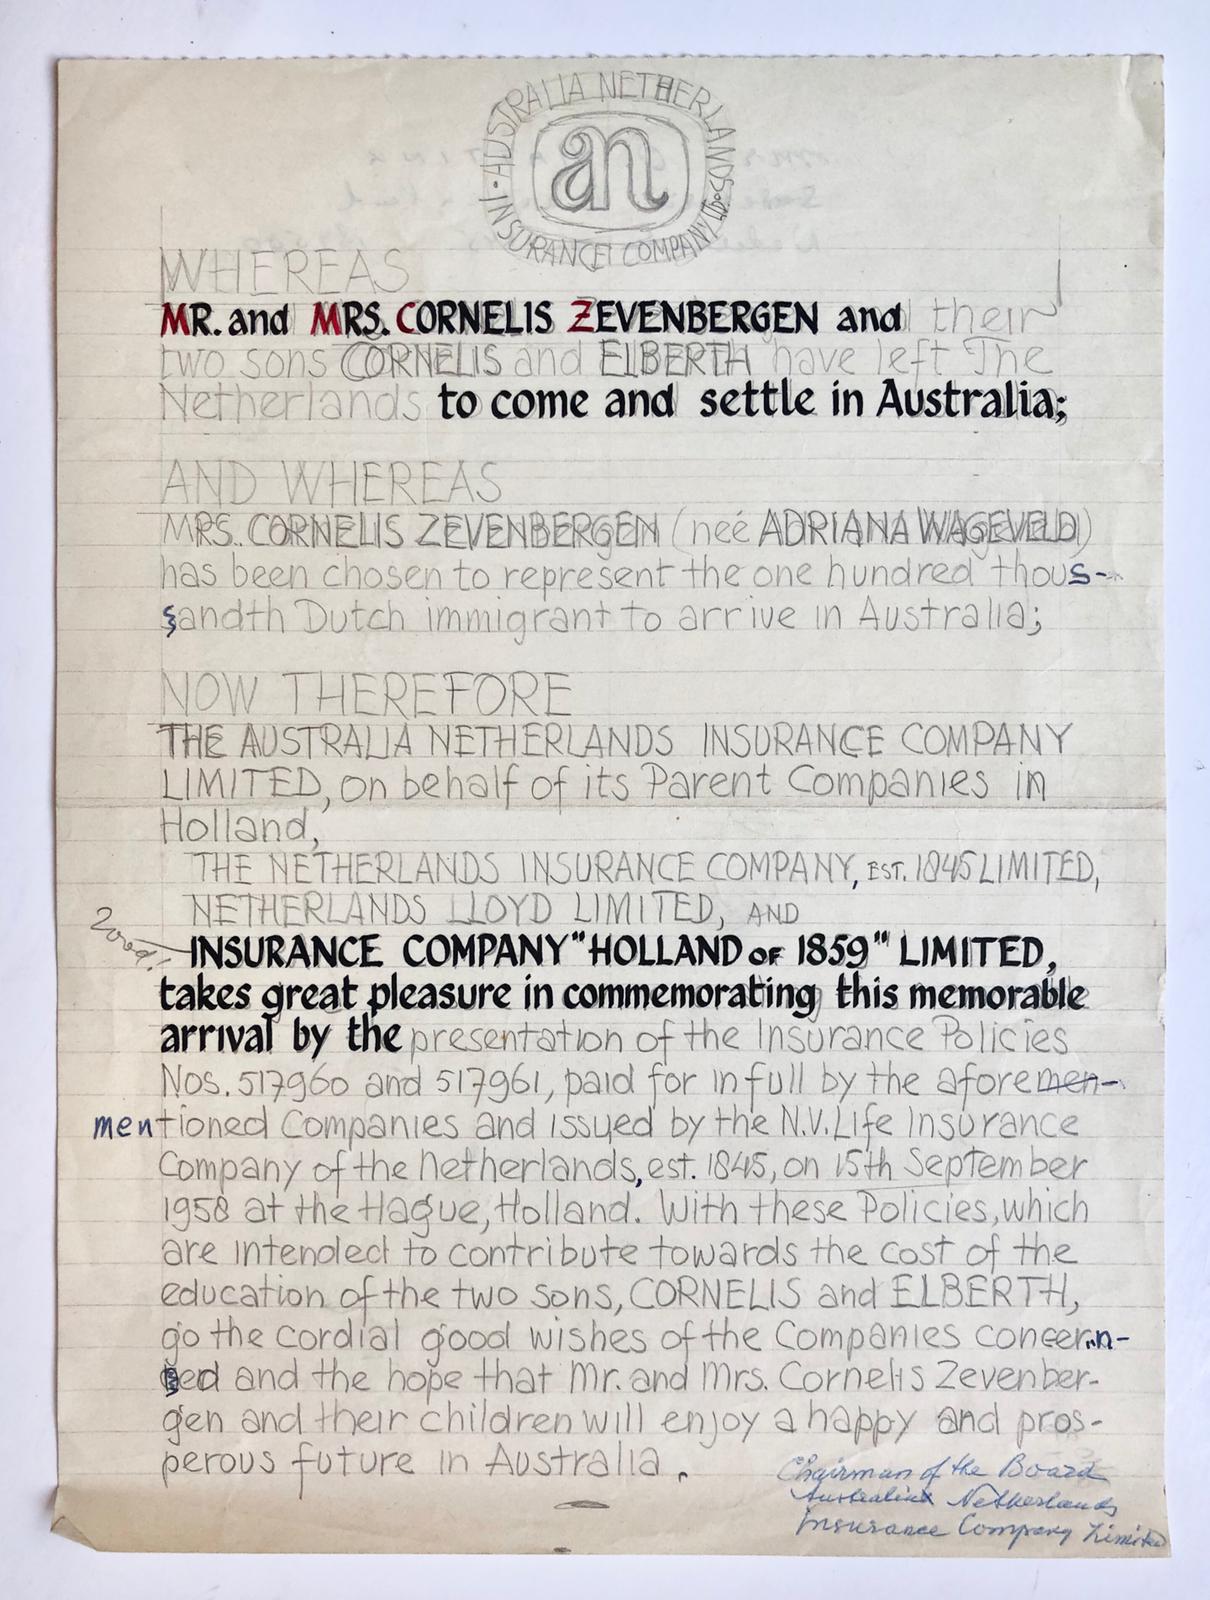  - [Draft manuscript charter 1958] Concept voor een oorkonde d.d. 1958, voor de emigratie naar Australie van het echtpaar Cornelis Zevenbergen en Adriana Wageveld met hun zonen Cornelis en Elbert. Manuscript, 1 pag.